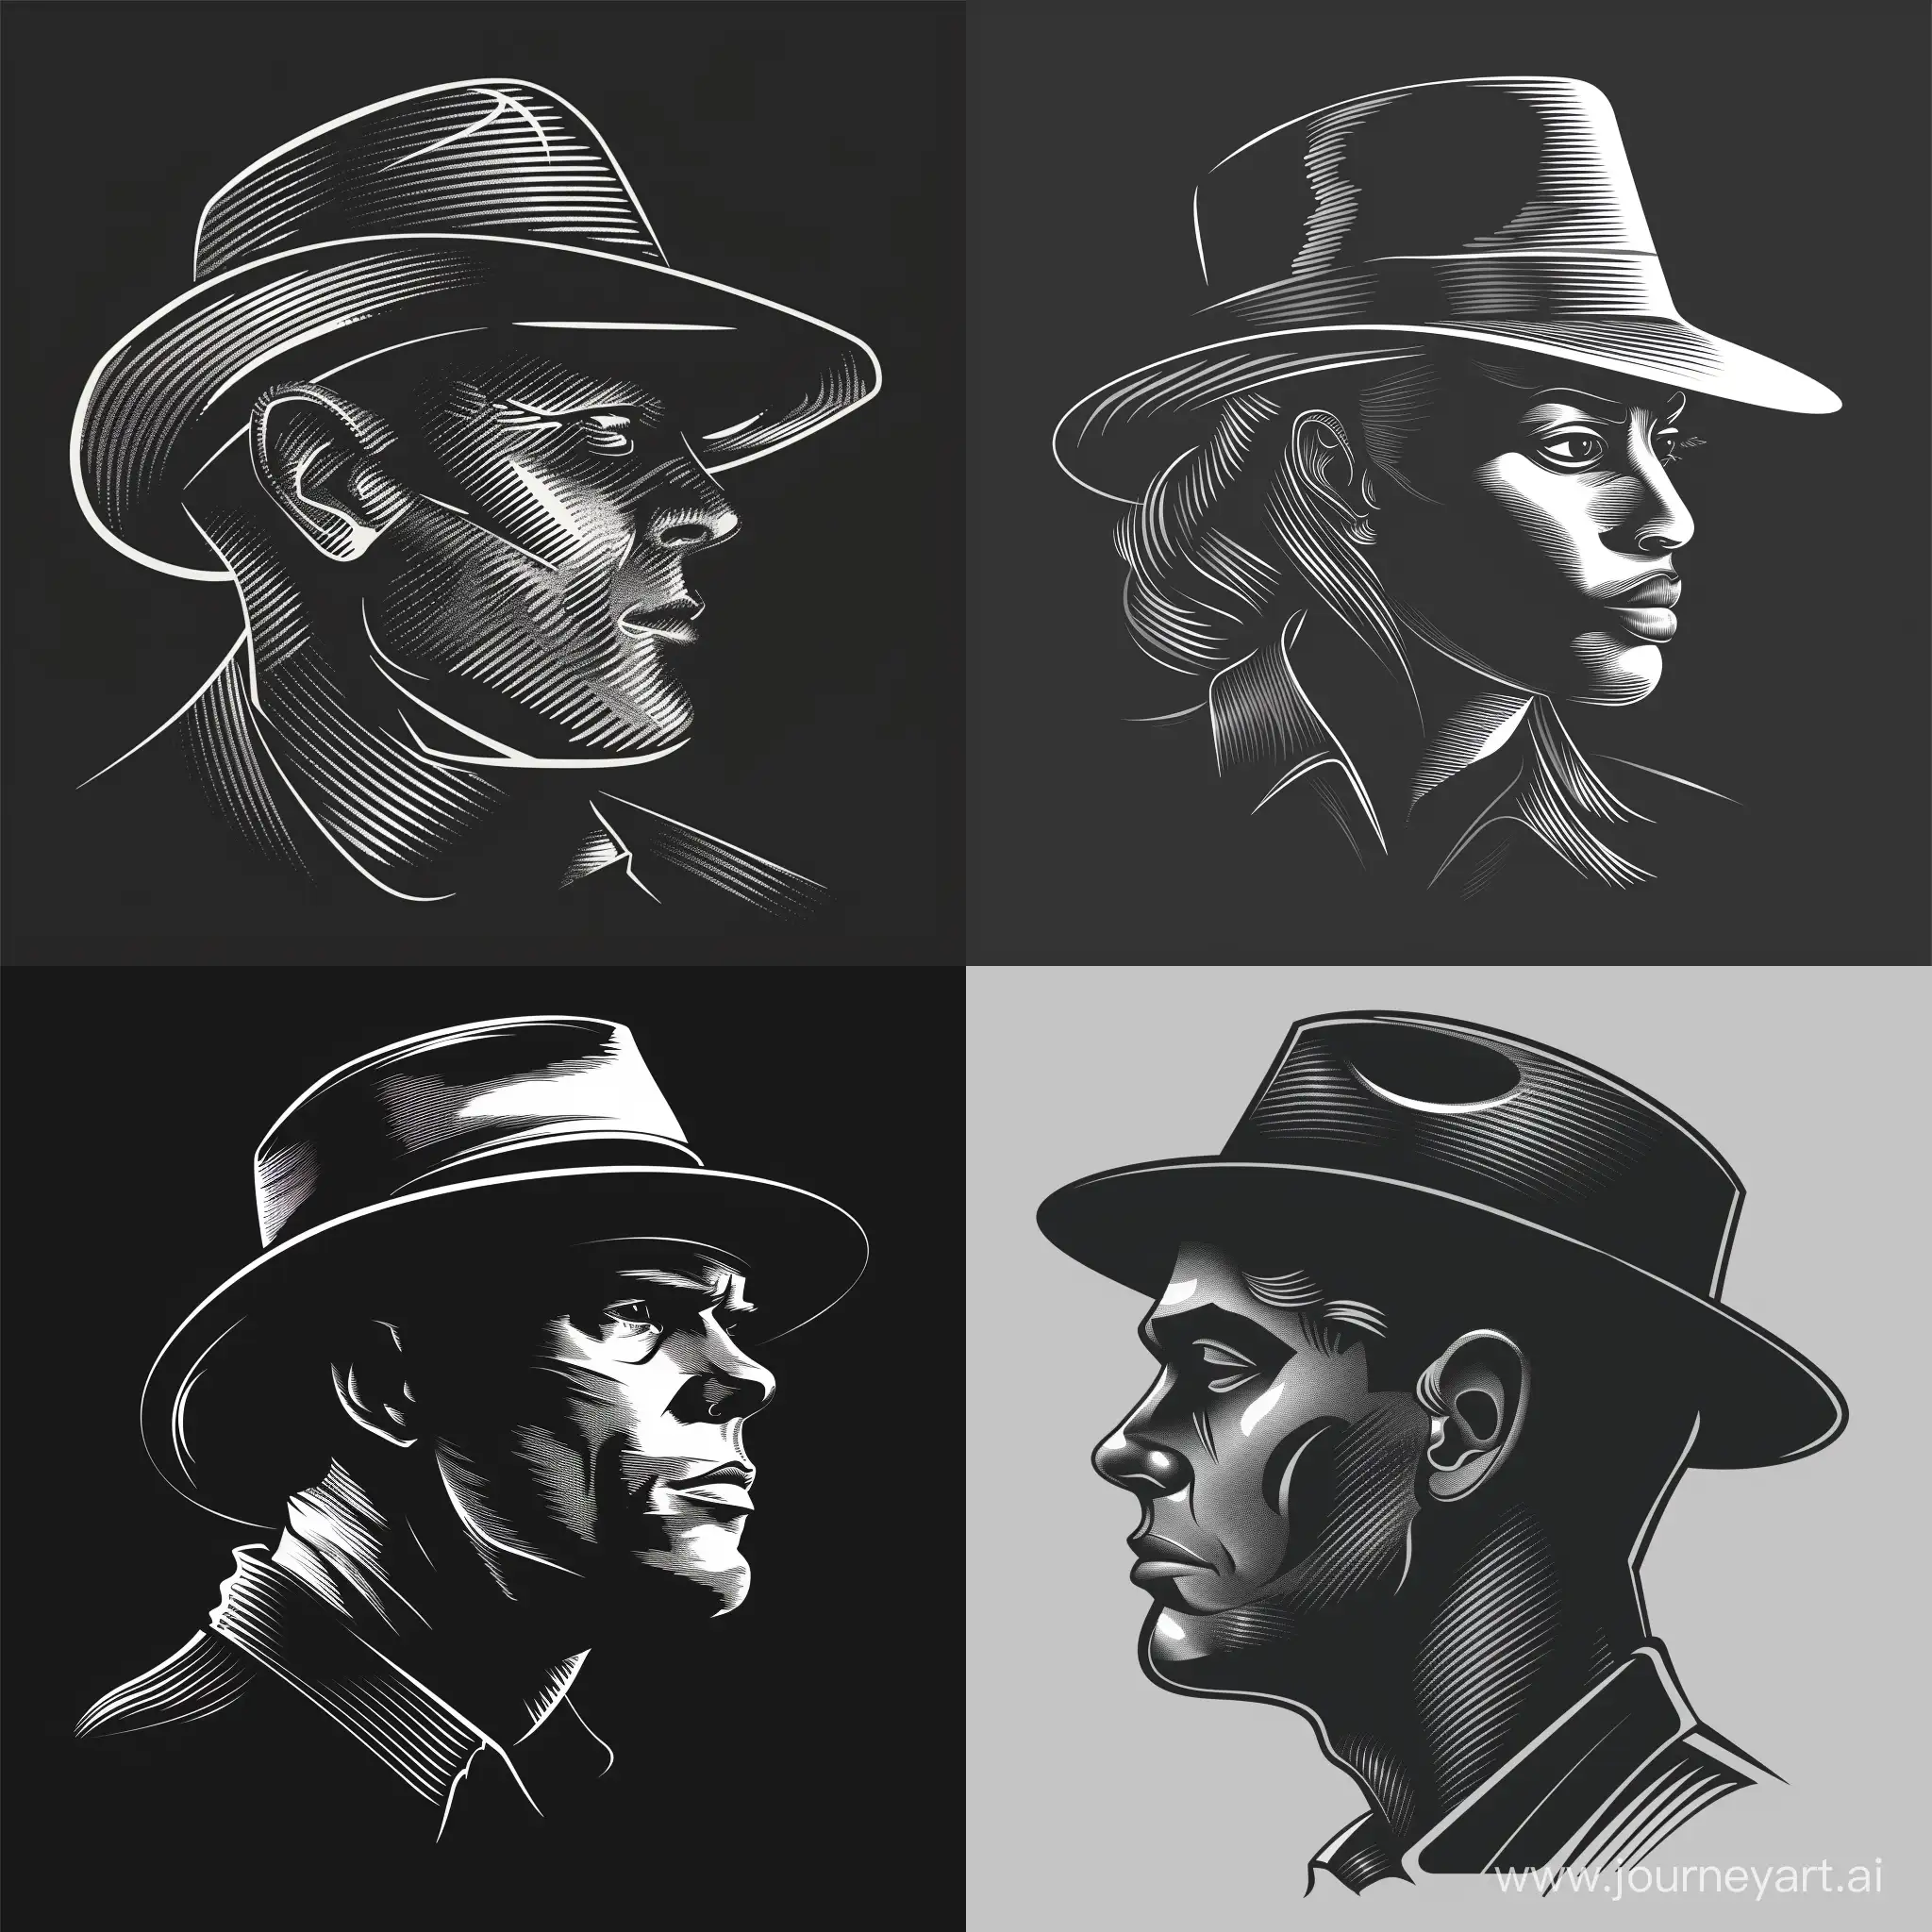 Реалистичная голова подозрительного человека(мафии) со шляпой в чёрно-белом стиле, голова анфас